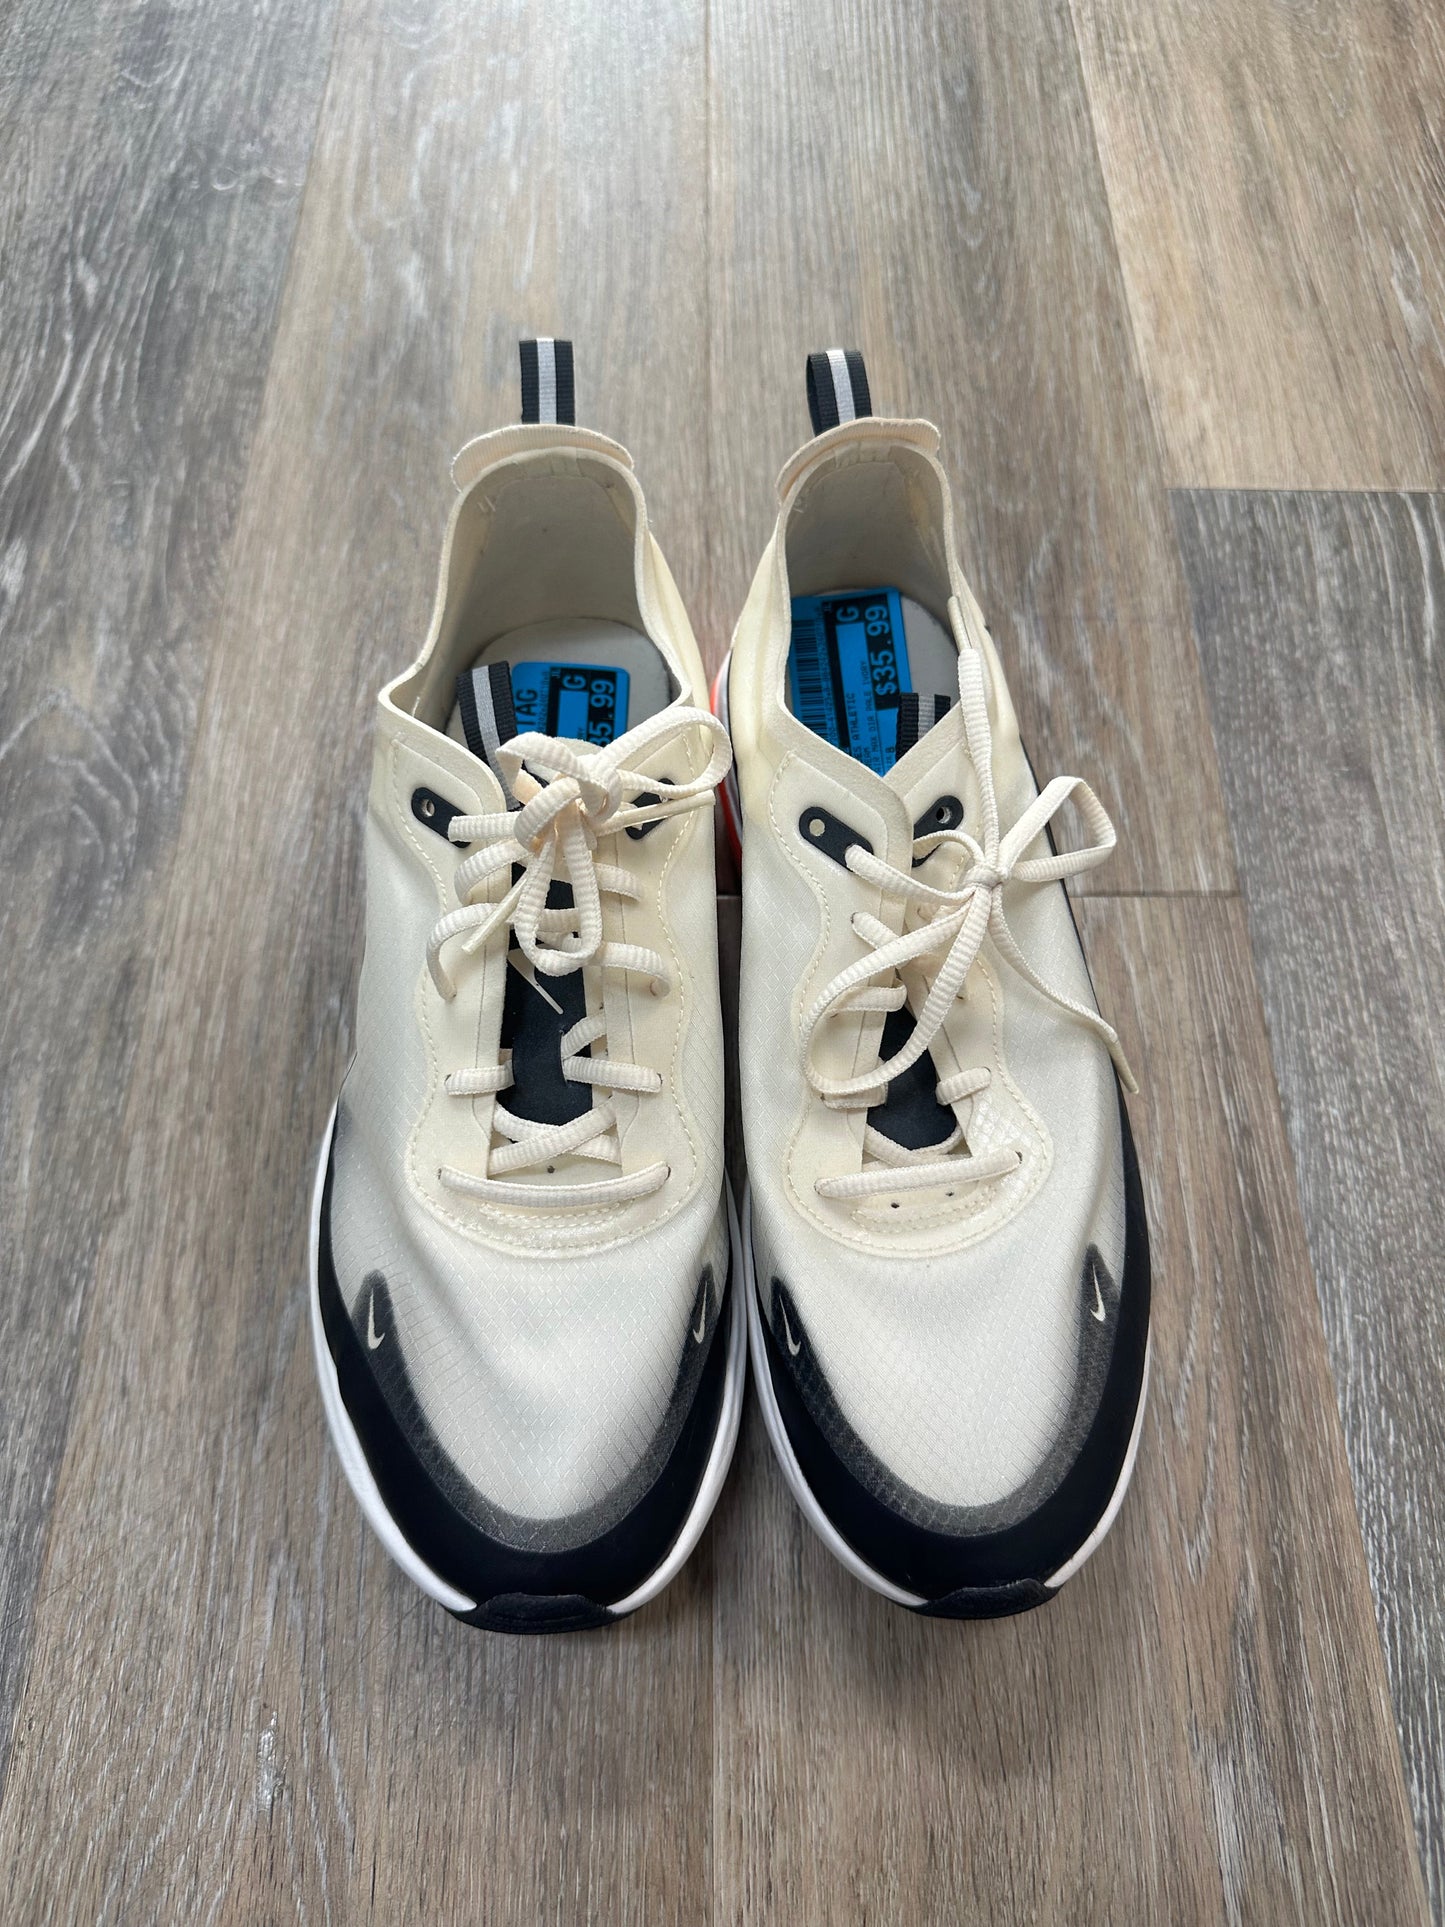 Cream Shoes Athletic Nike, Size 8